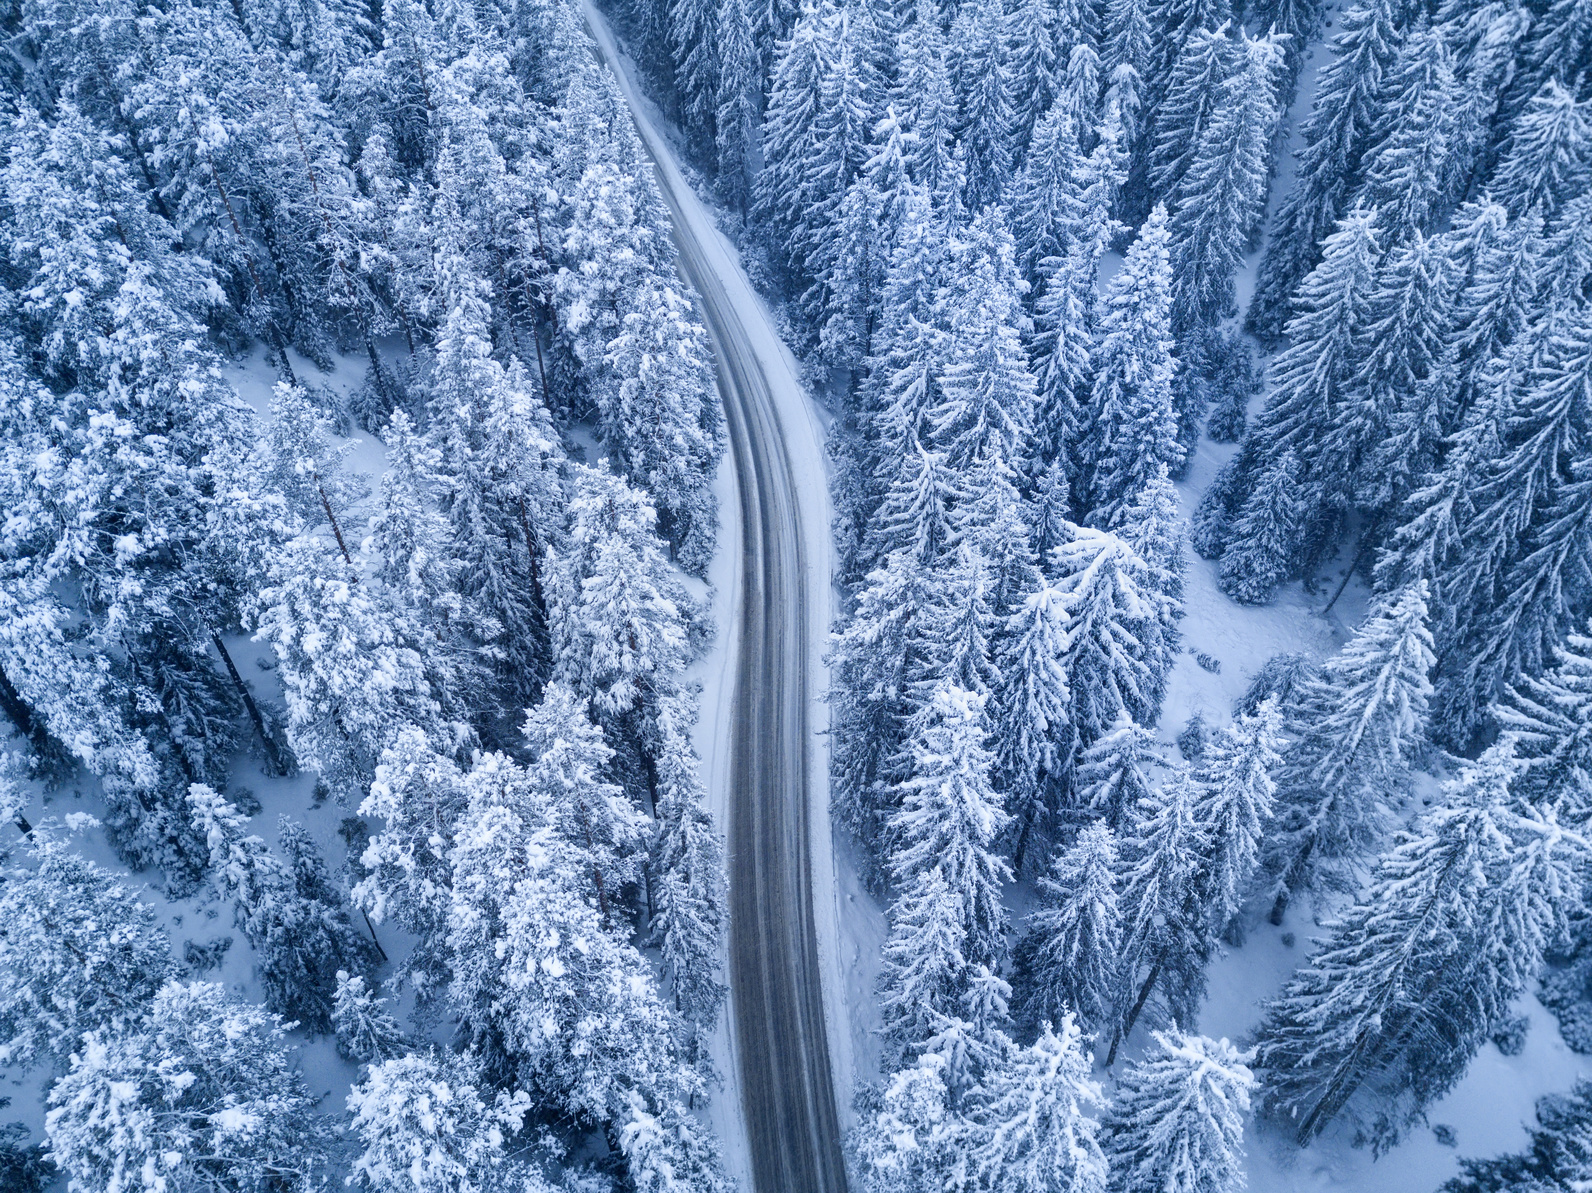 عکسهای زیبا از طبیعت در فصل زمستان
